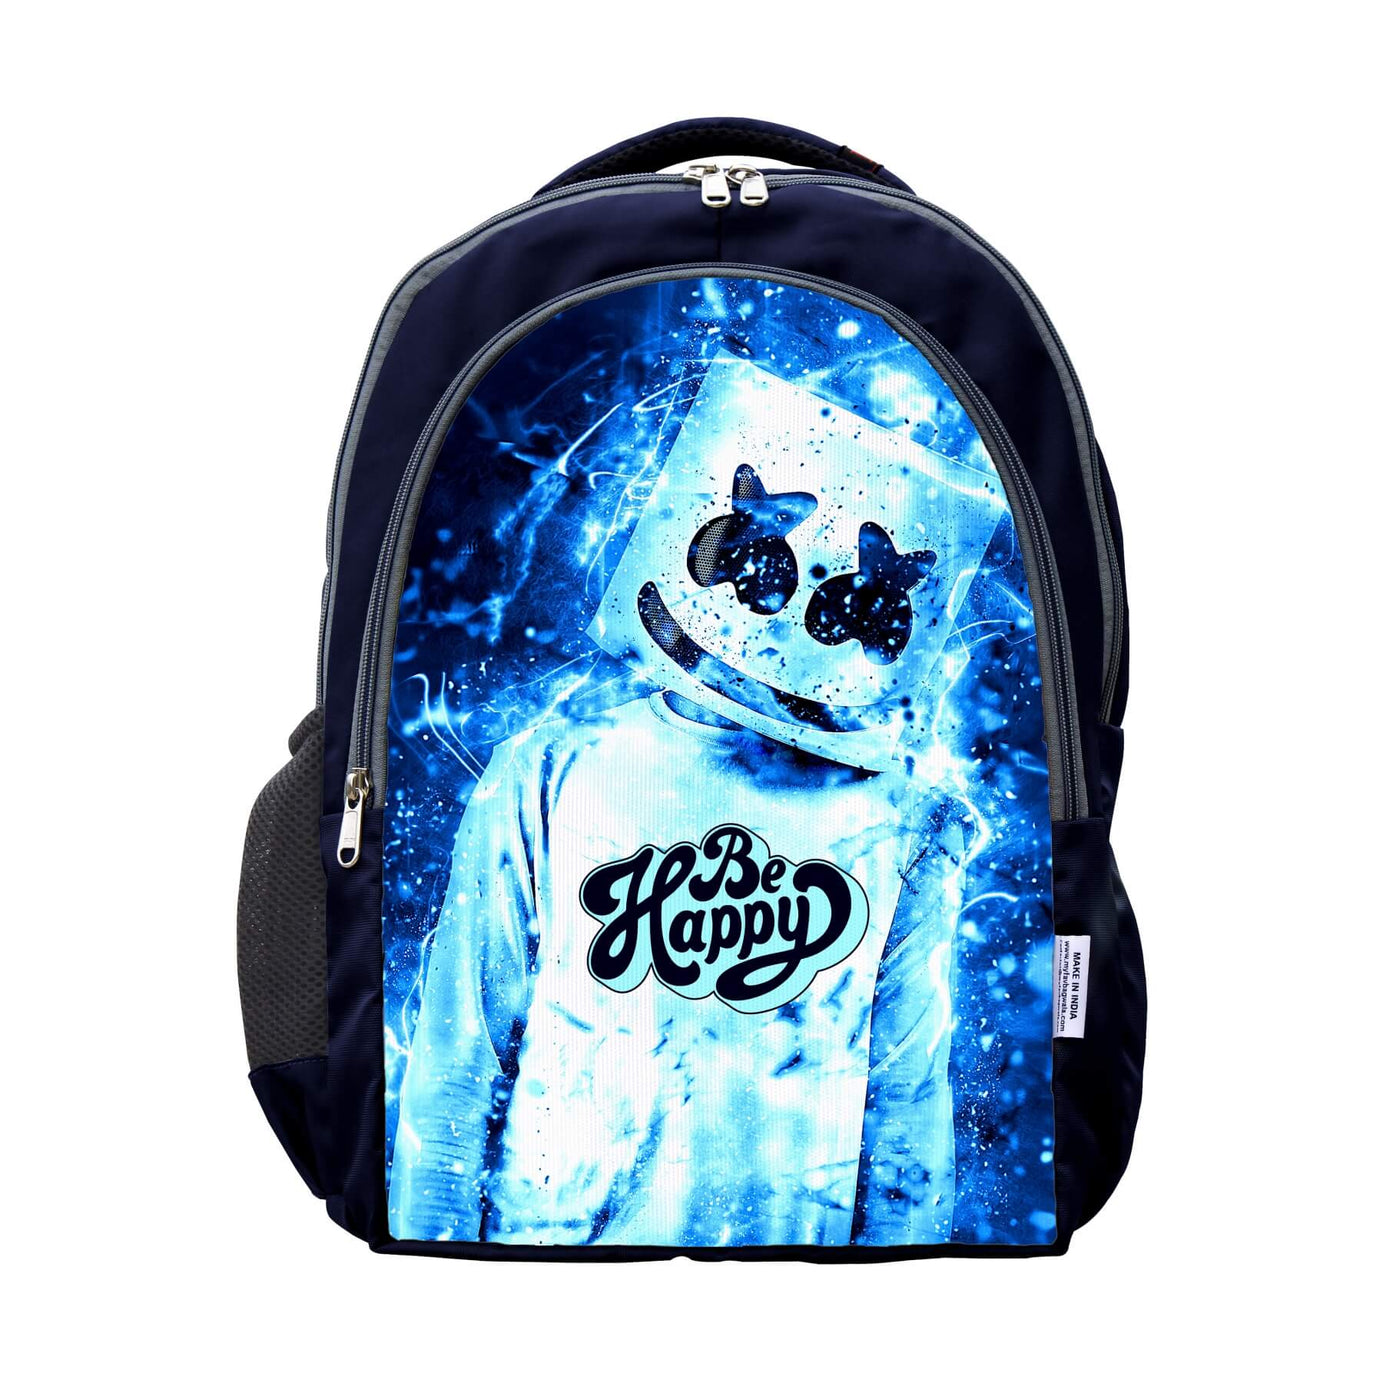 My Fav Be Happy Laptop Backpack For Men Women / School Bag for Boys Girls